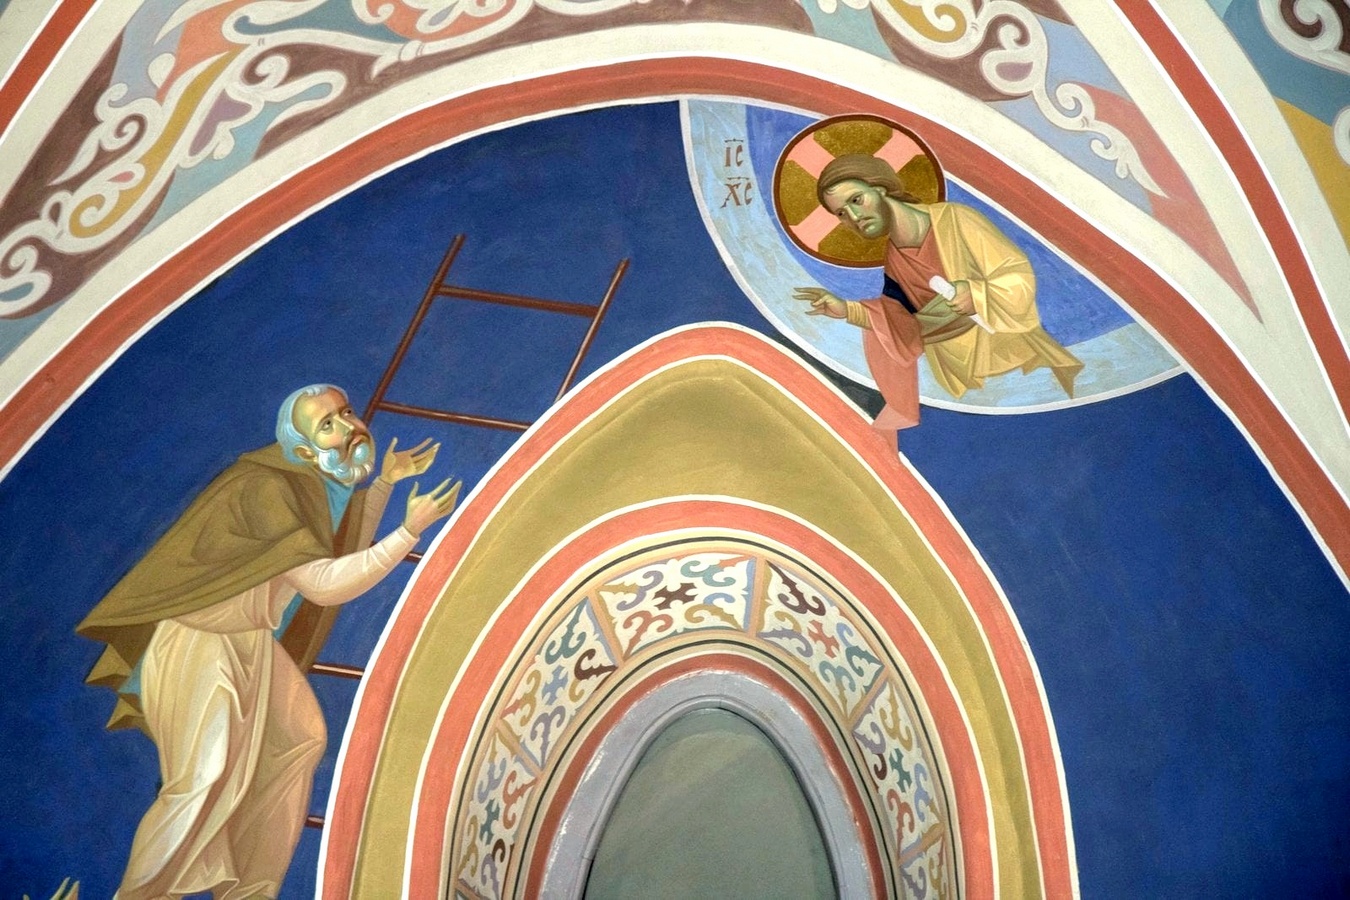 Изображения грибов на церковных фресках. Лествица канал спас